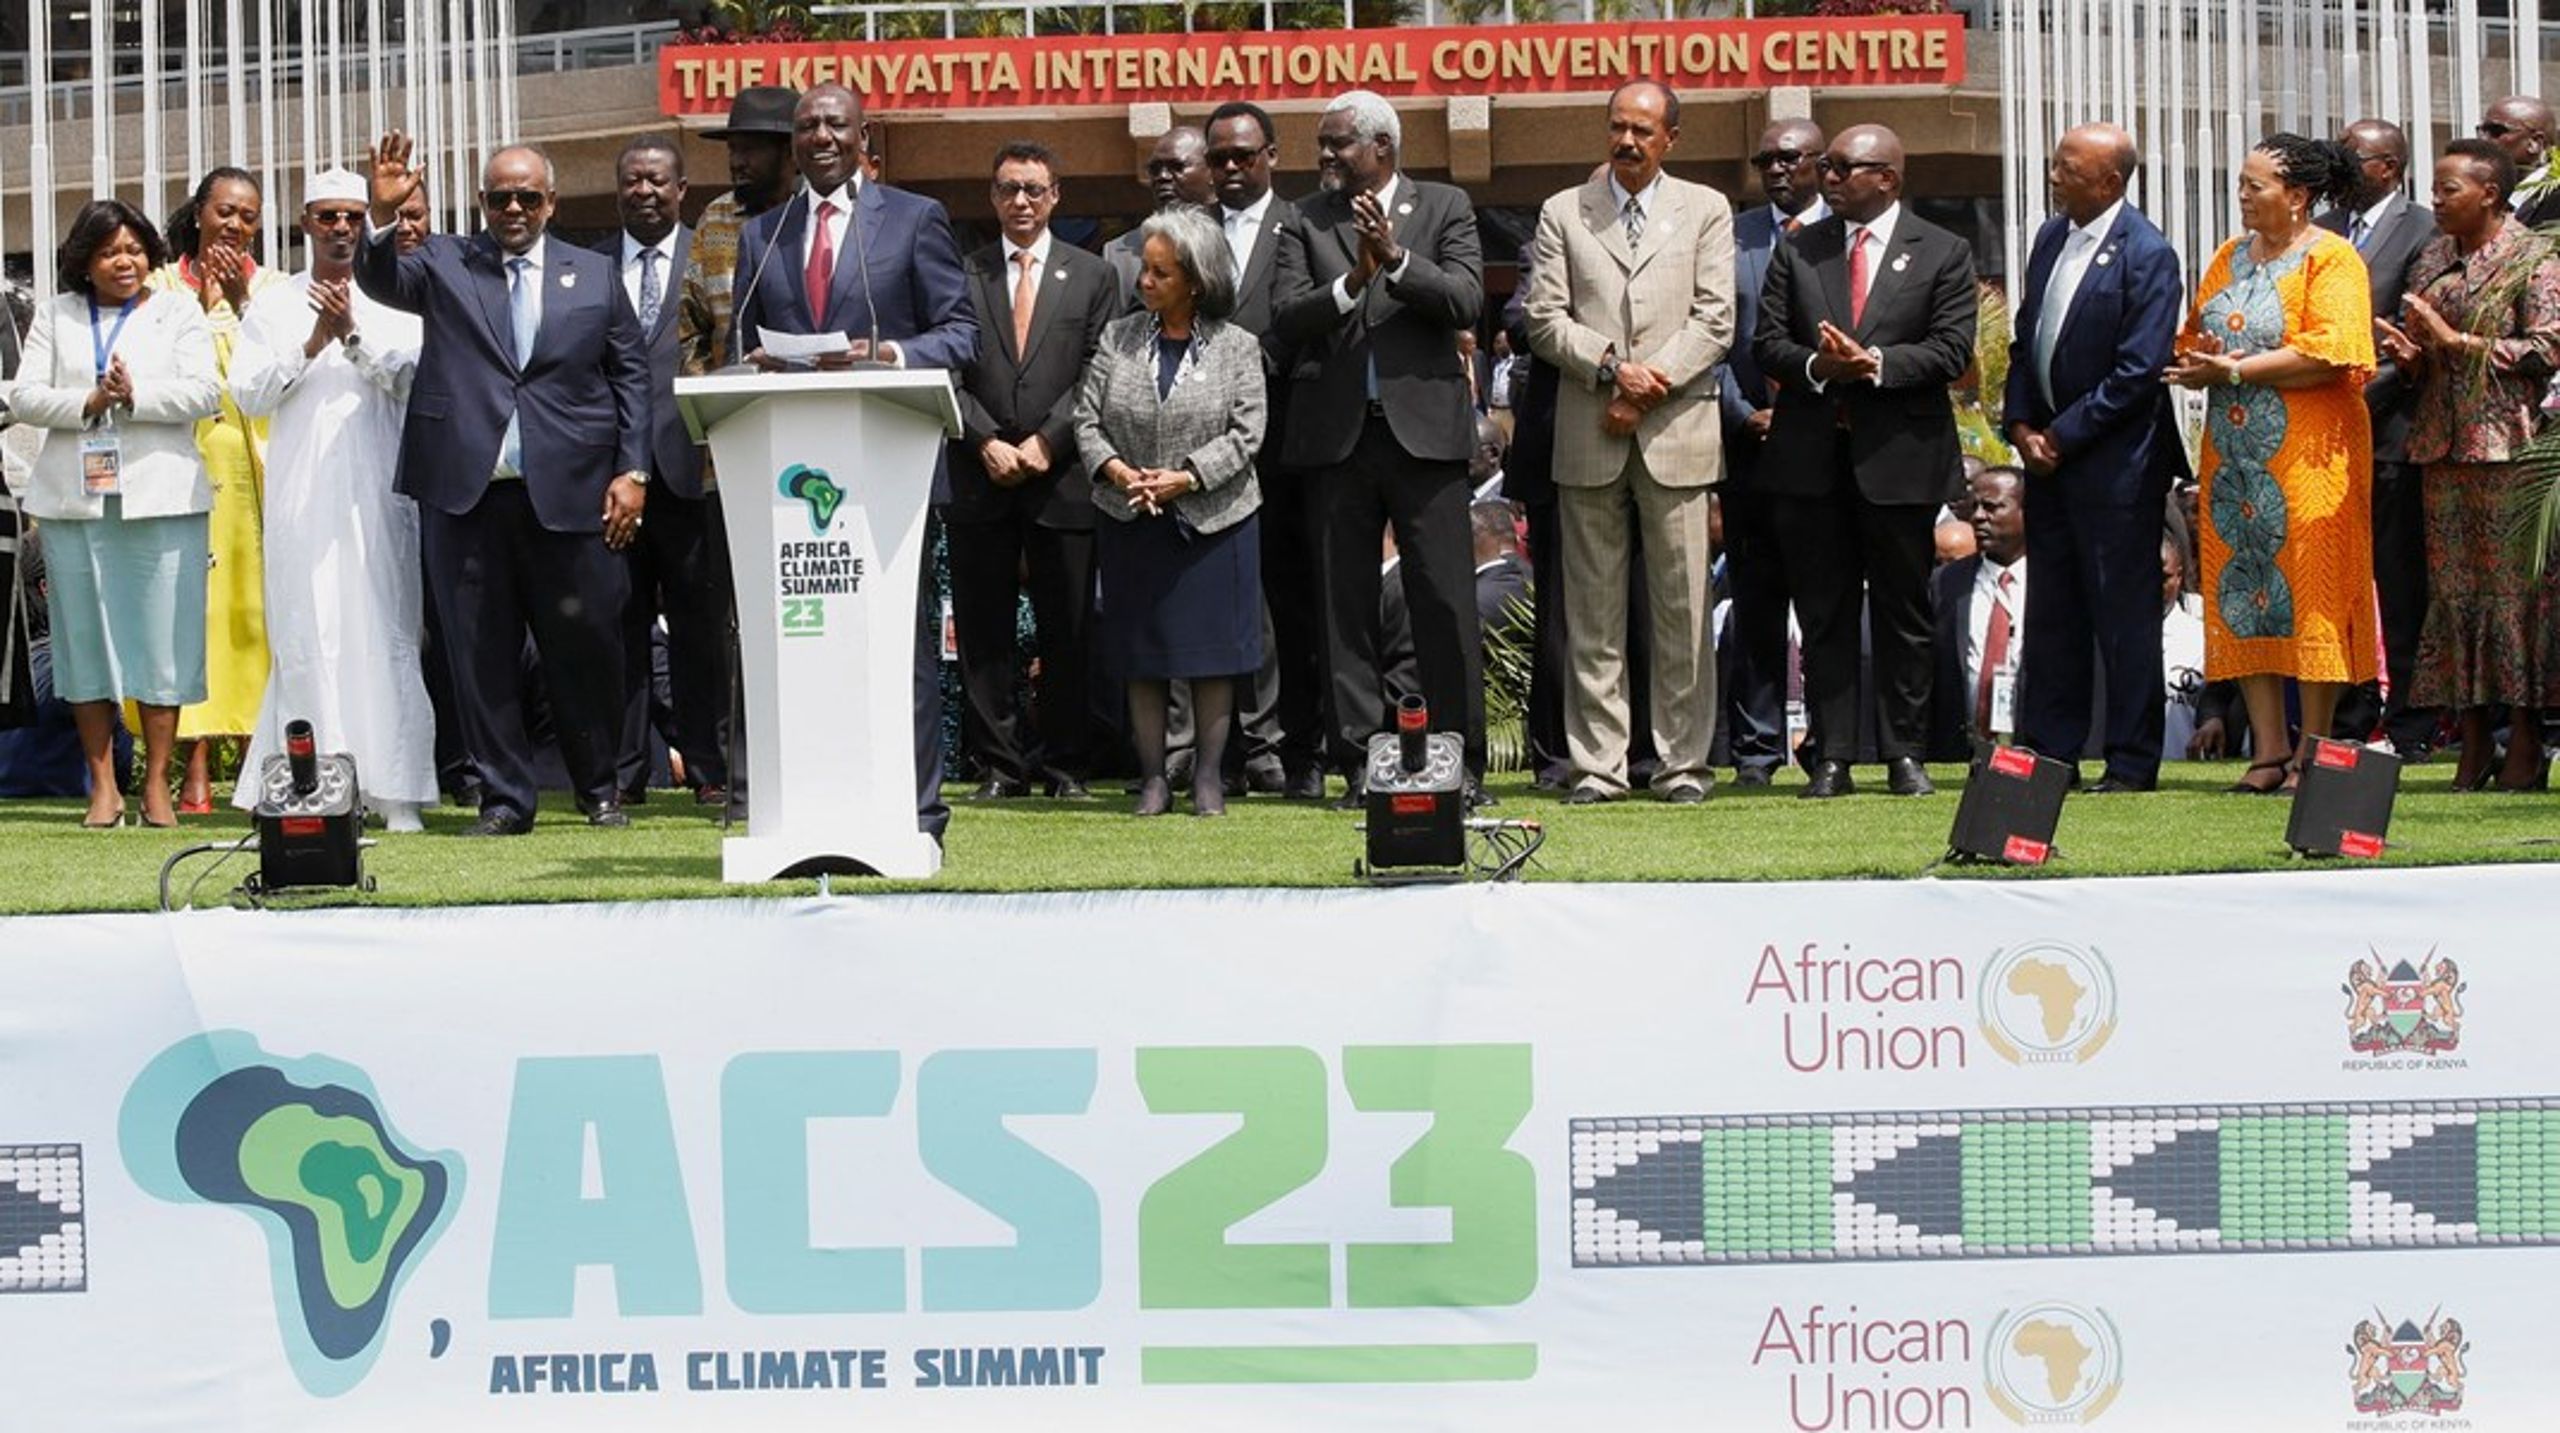 Fremover skal der afholdes African Climate Summit. Det var en af de ting, som de afrikanske lande blev enige om på topmødet i Nairobi.&nbsp;